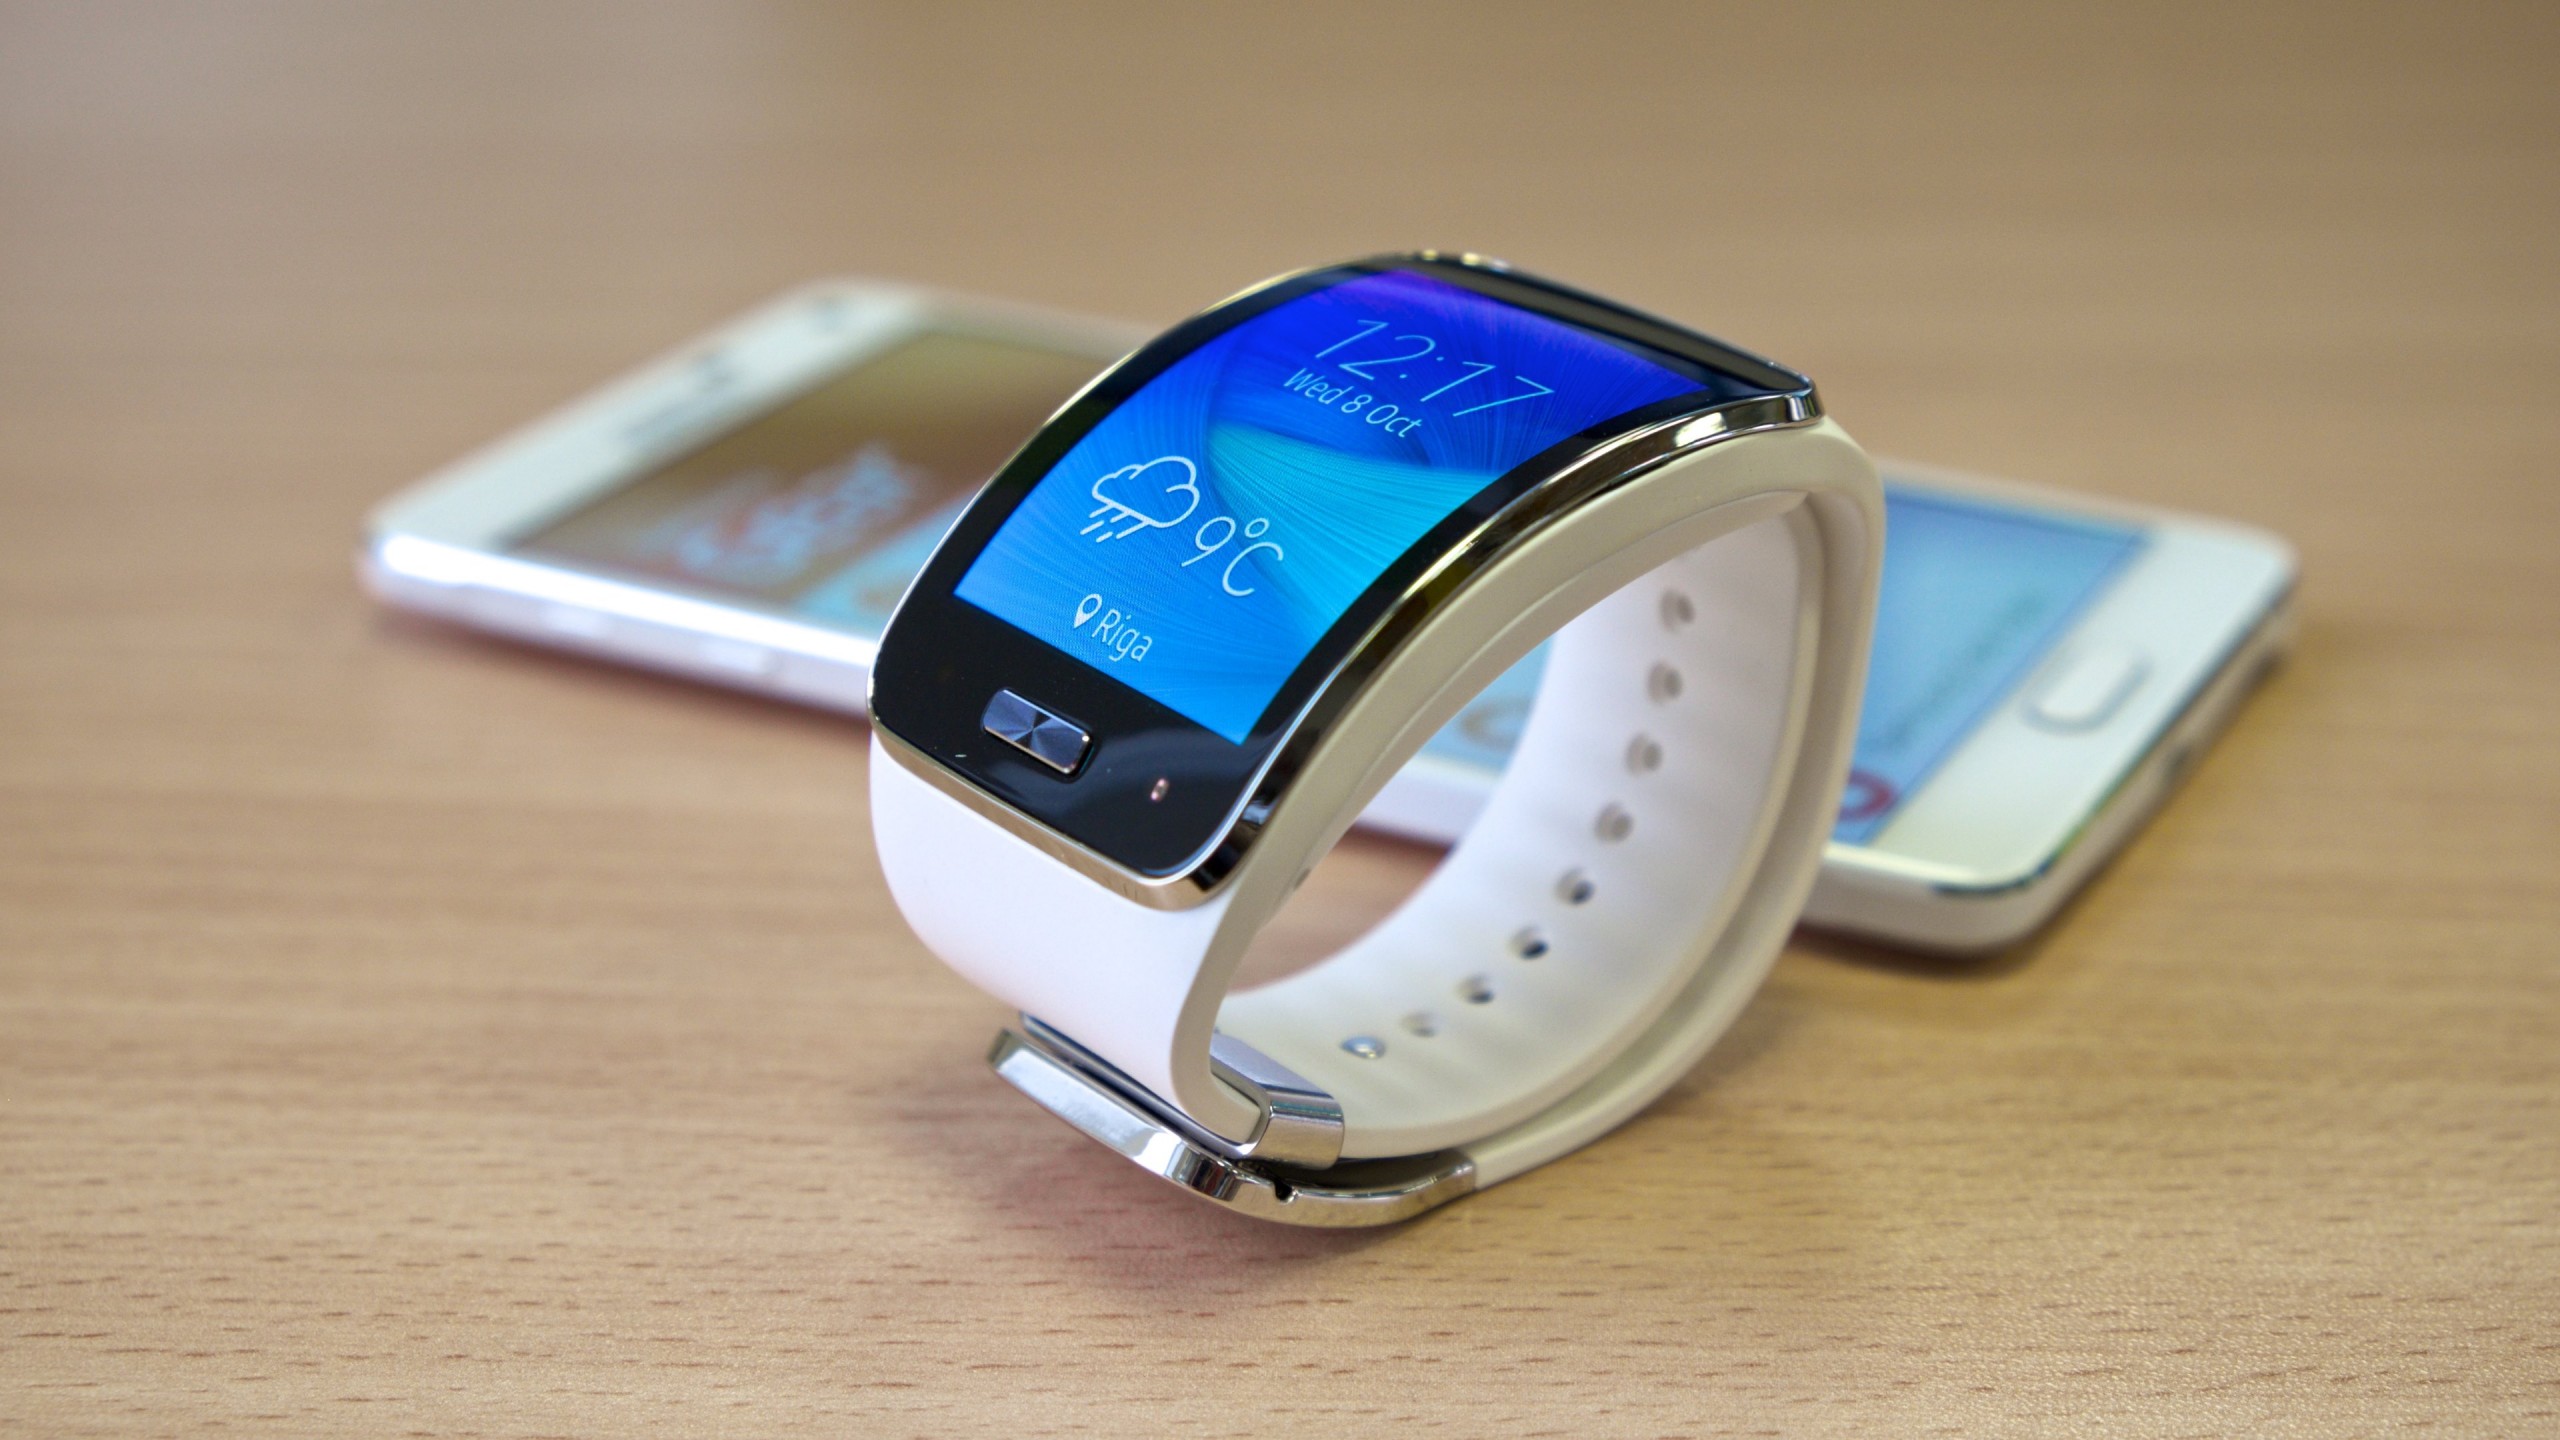 smartwatch wallpaper,gadget,beobachten,mobiltelefon,telefon ansehen,tragbares kommunikationsgerät